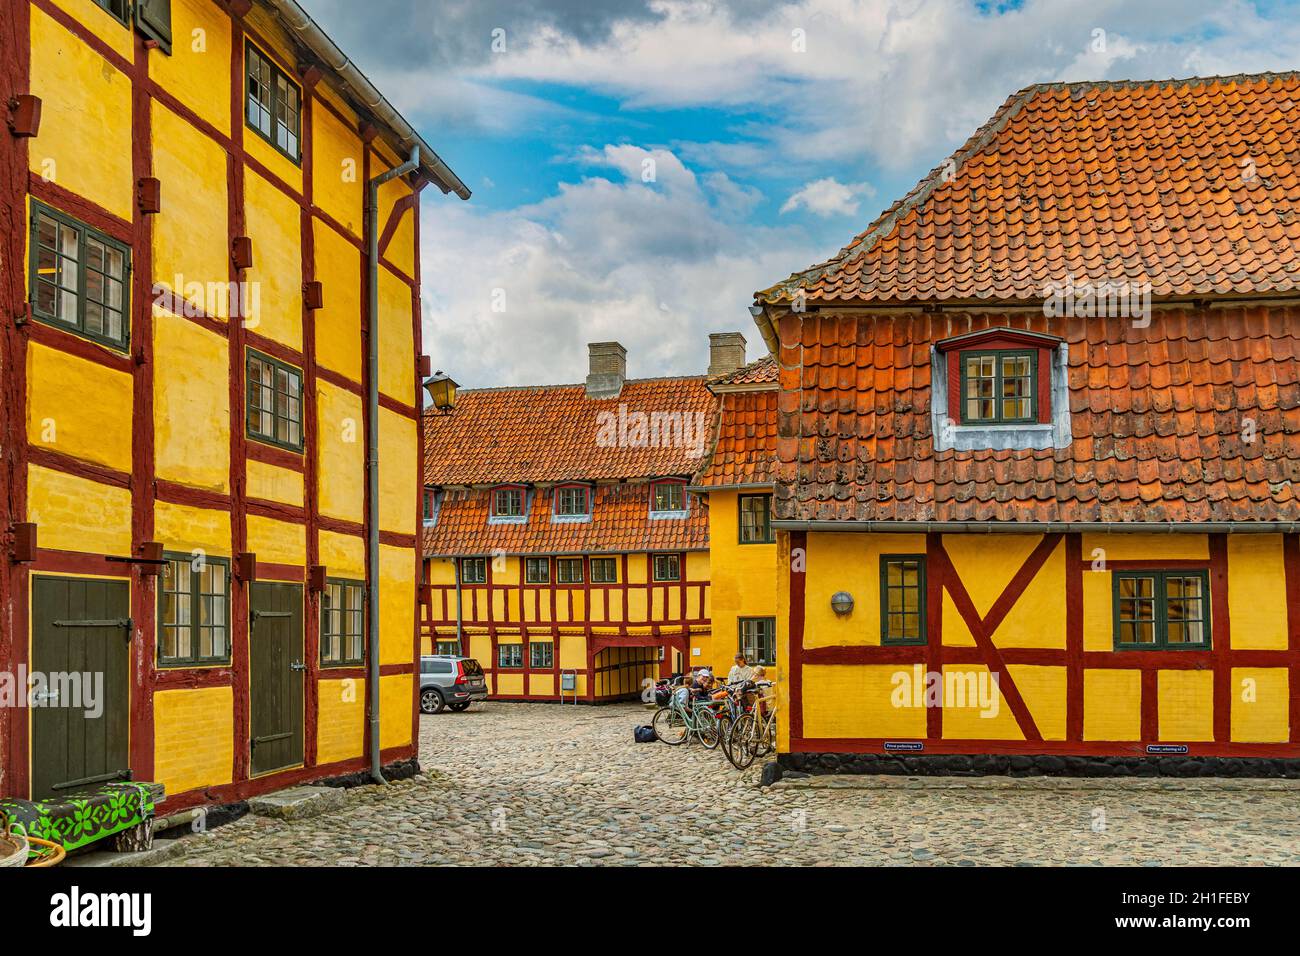 Traditionelle Fachwerkhäuser und gelbe alte Häuser im historischen Zentrum, in der Nähe des Hafens, der Stadt Kerteminde. Kerteminde, Dänemark Stockfoto